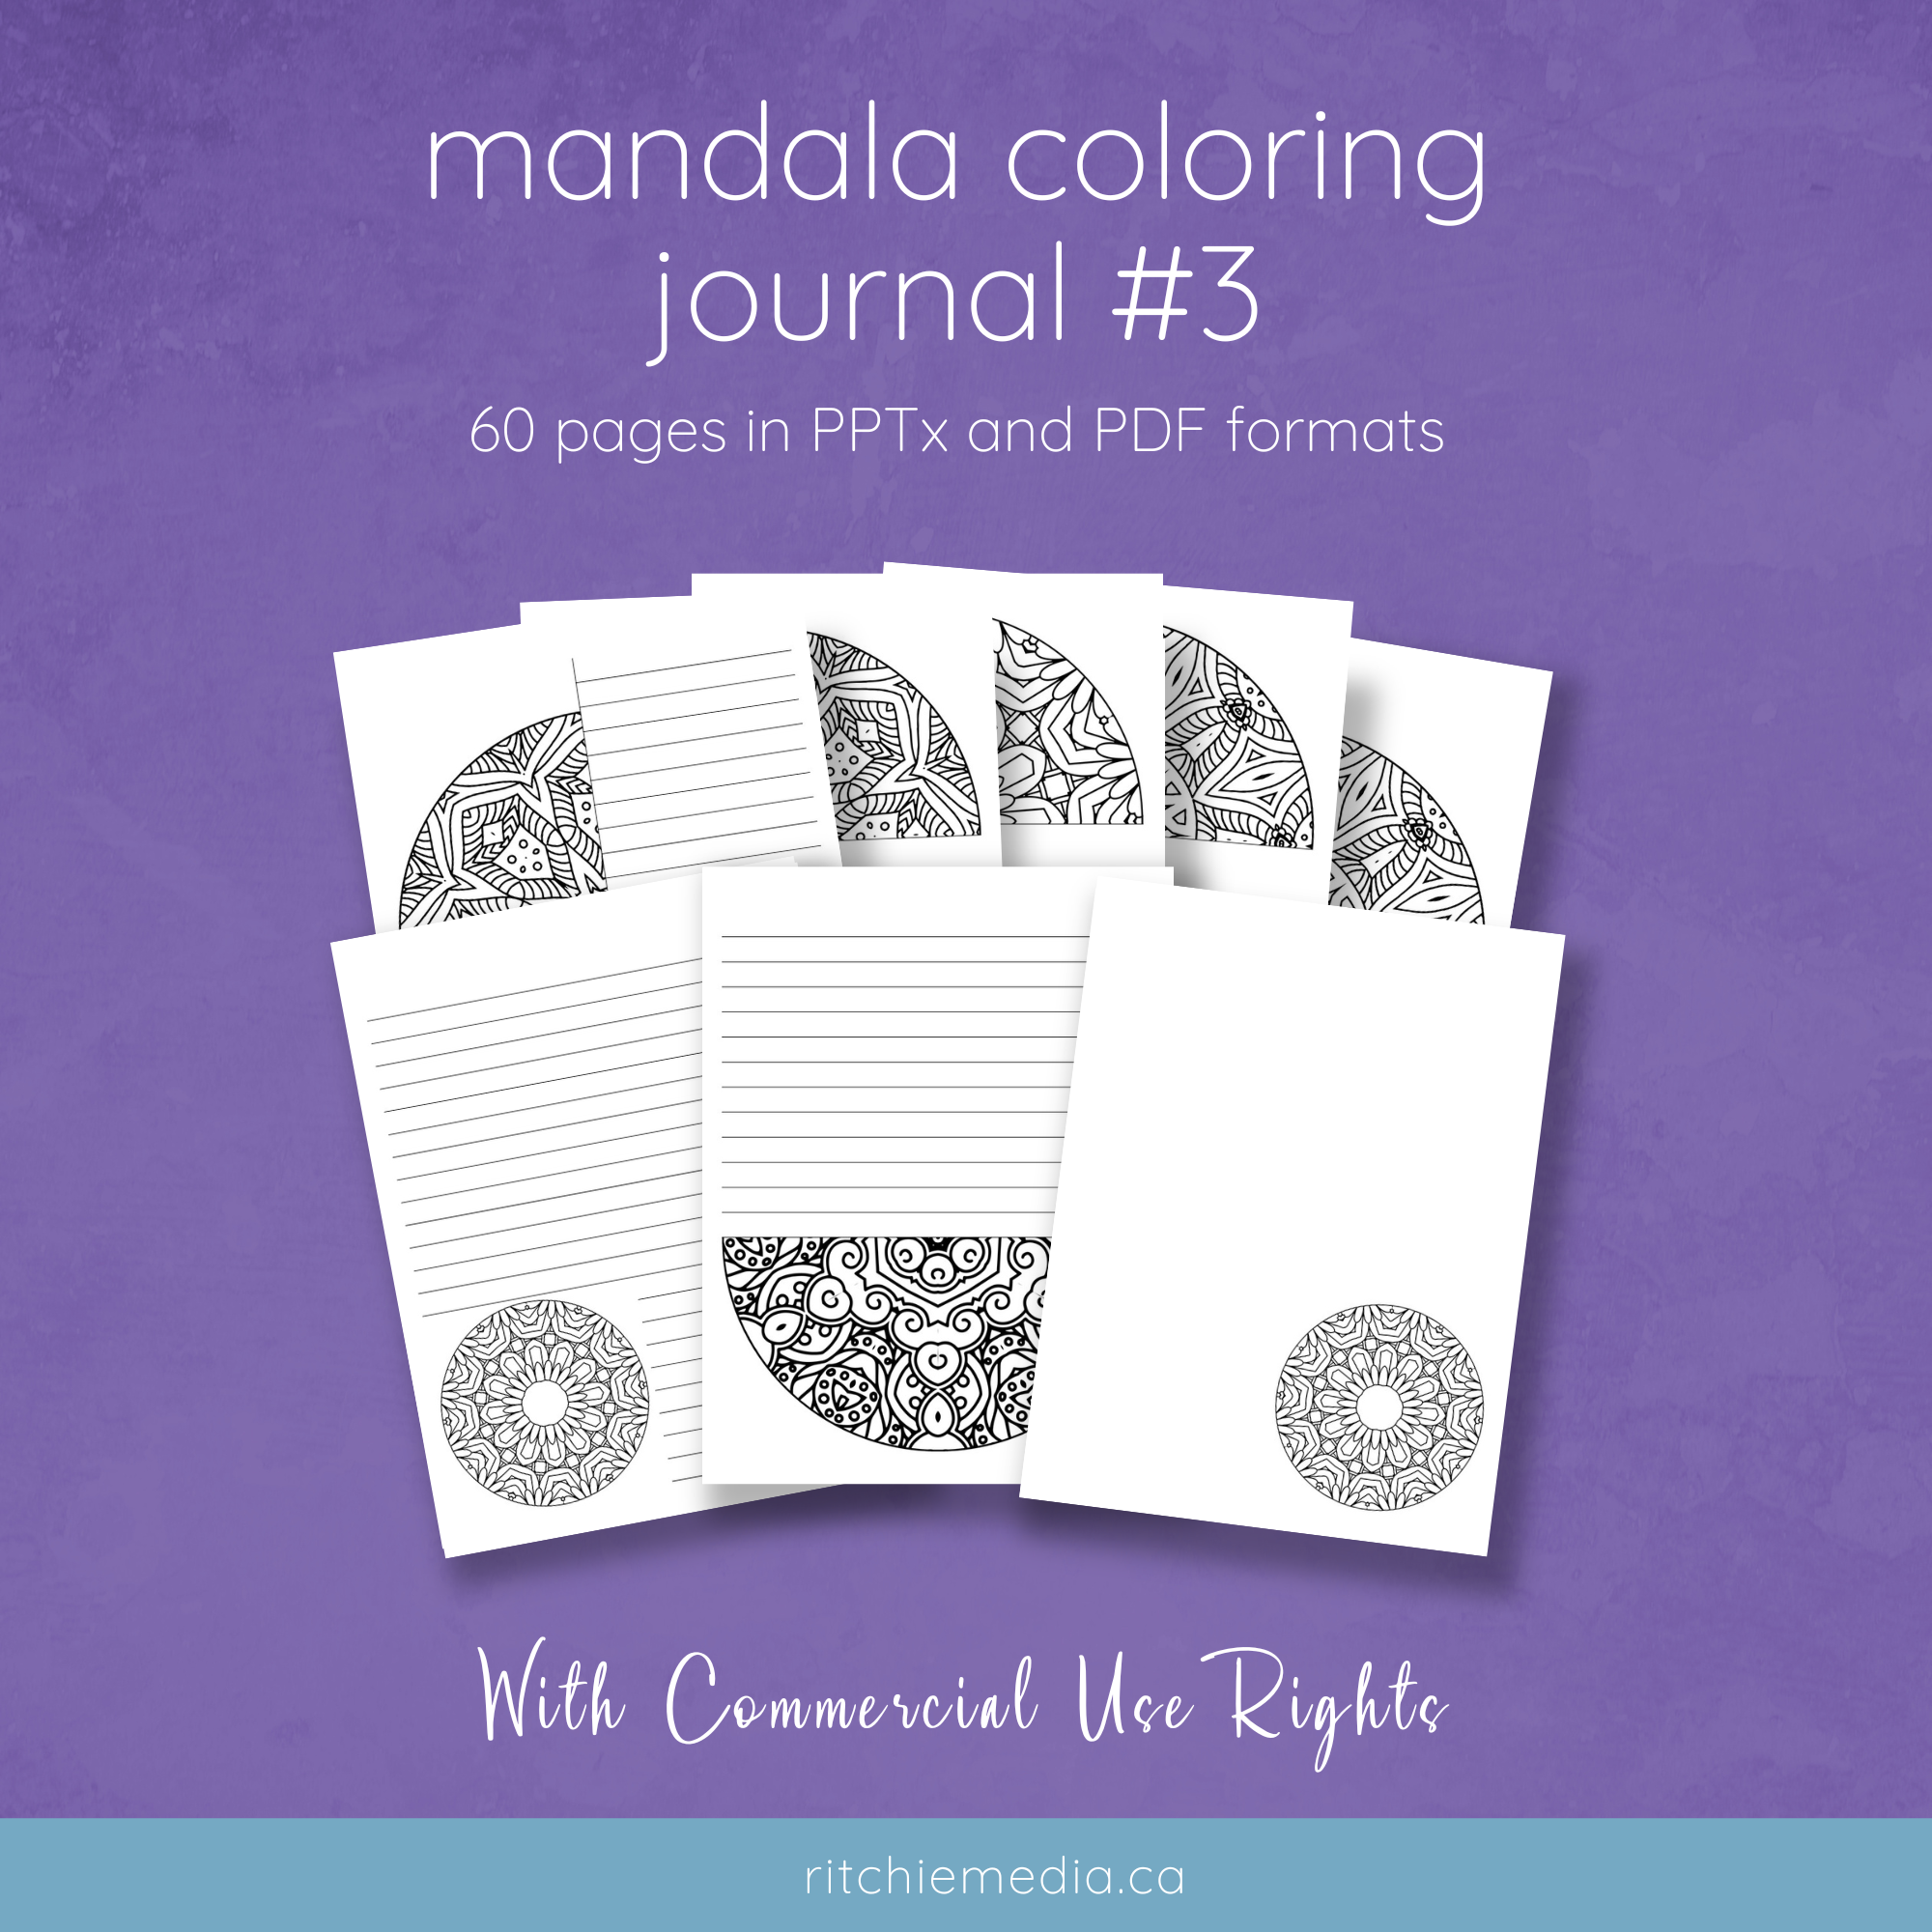 mandala coloring journal 3 mockup